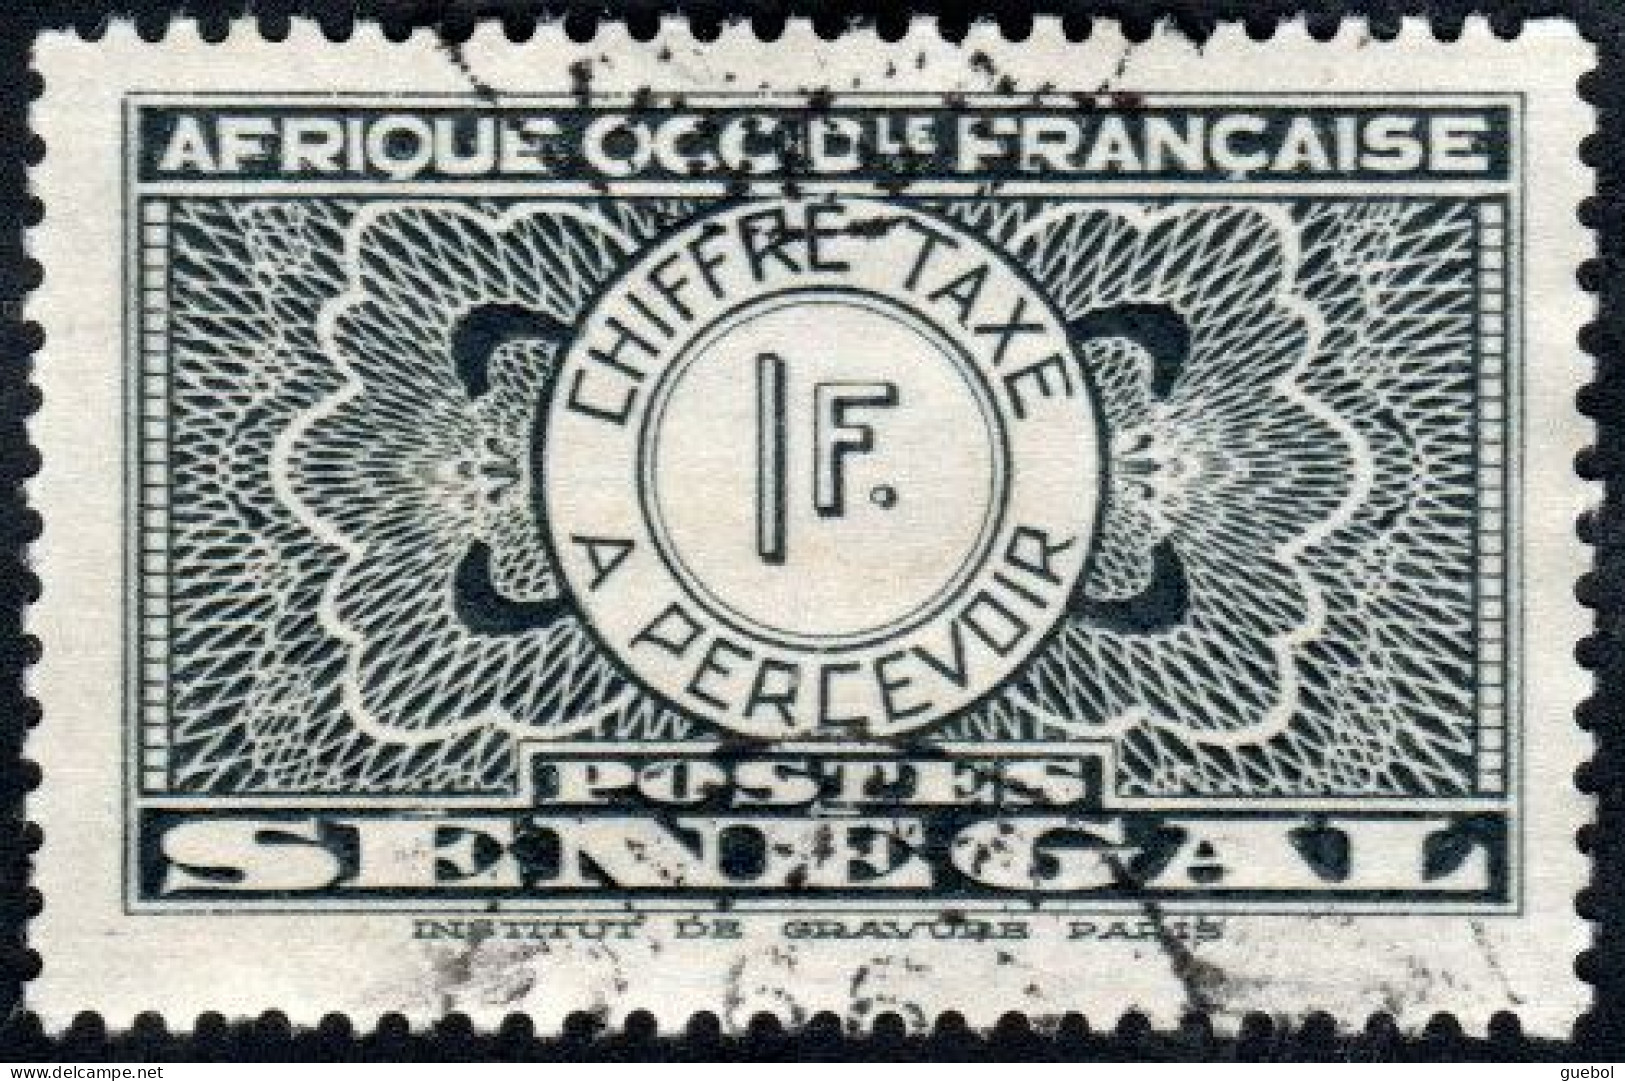 Sénégal Obl. N° Taxe 29 - Pièce De Monnaie Sur Fond Burelé Le 1f Noir - Timbres-taxe